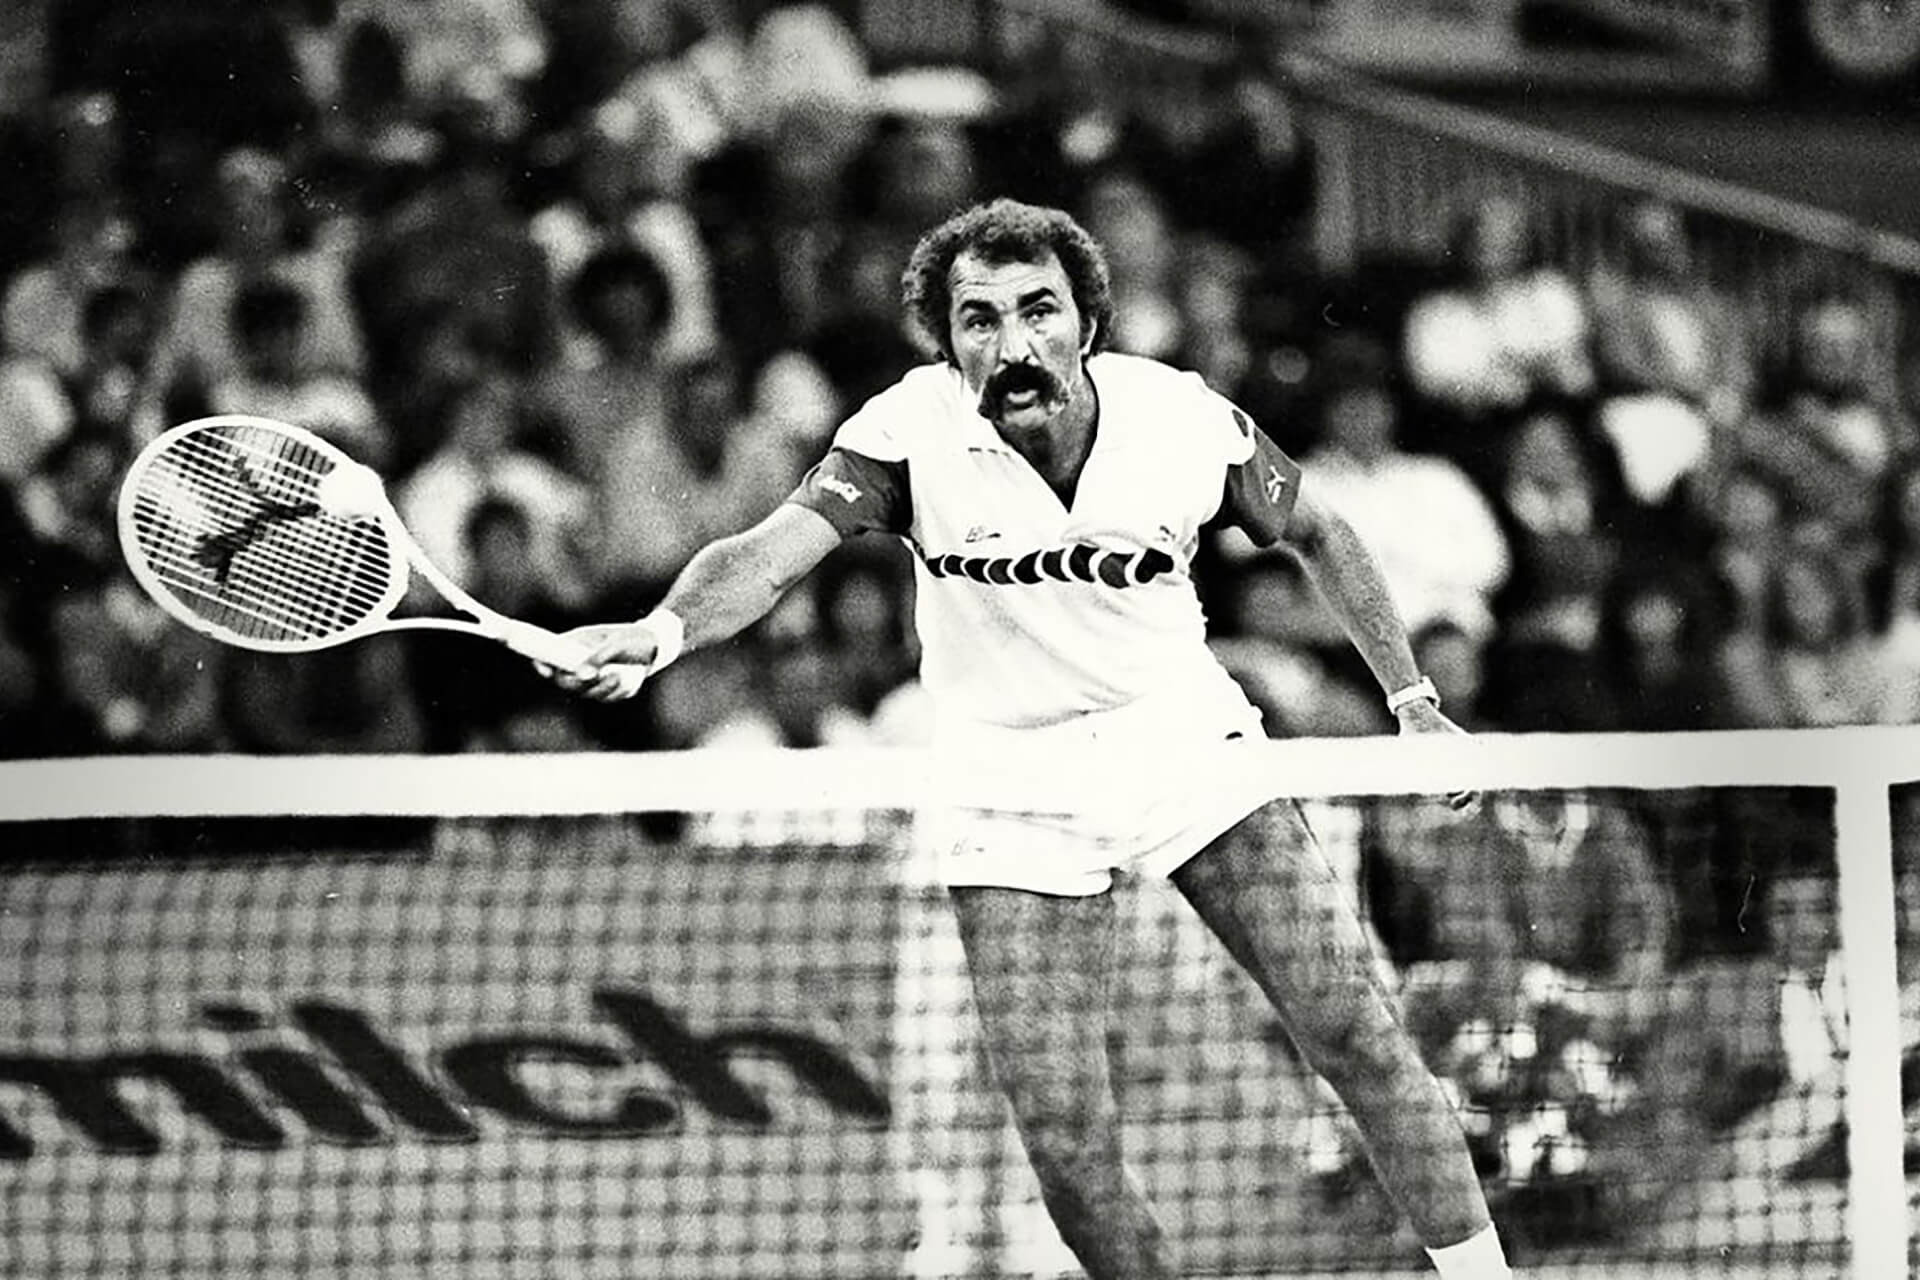 În 1970, Ion Țiriac a câștigat împreună cu Ilie Năstase turneul de la Roland Garros